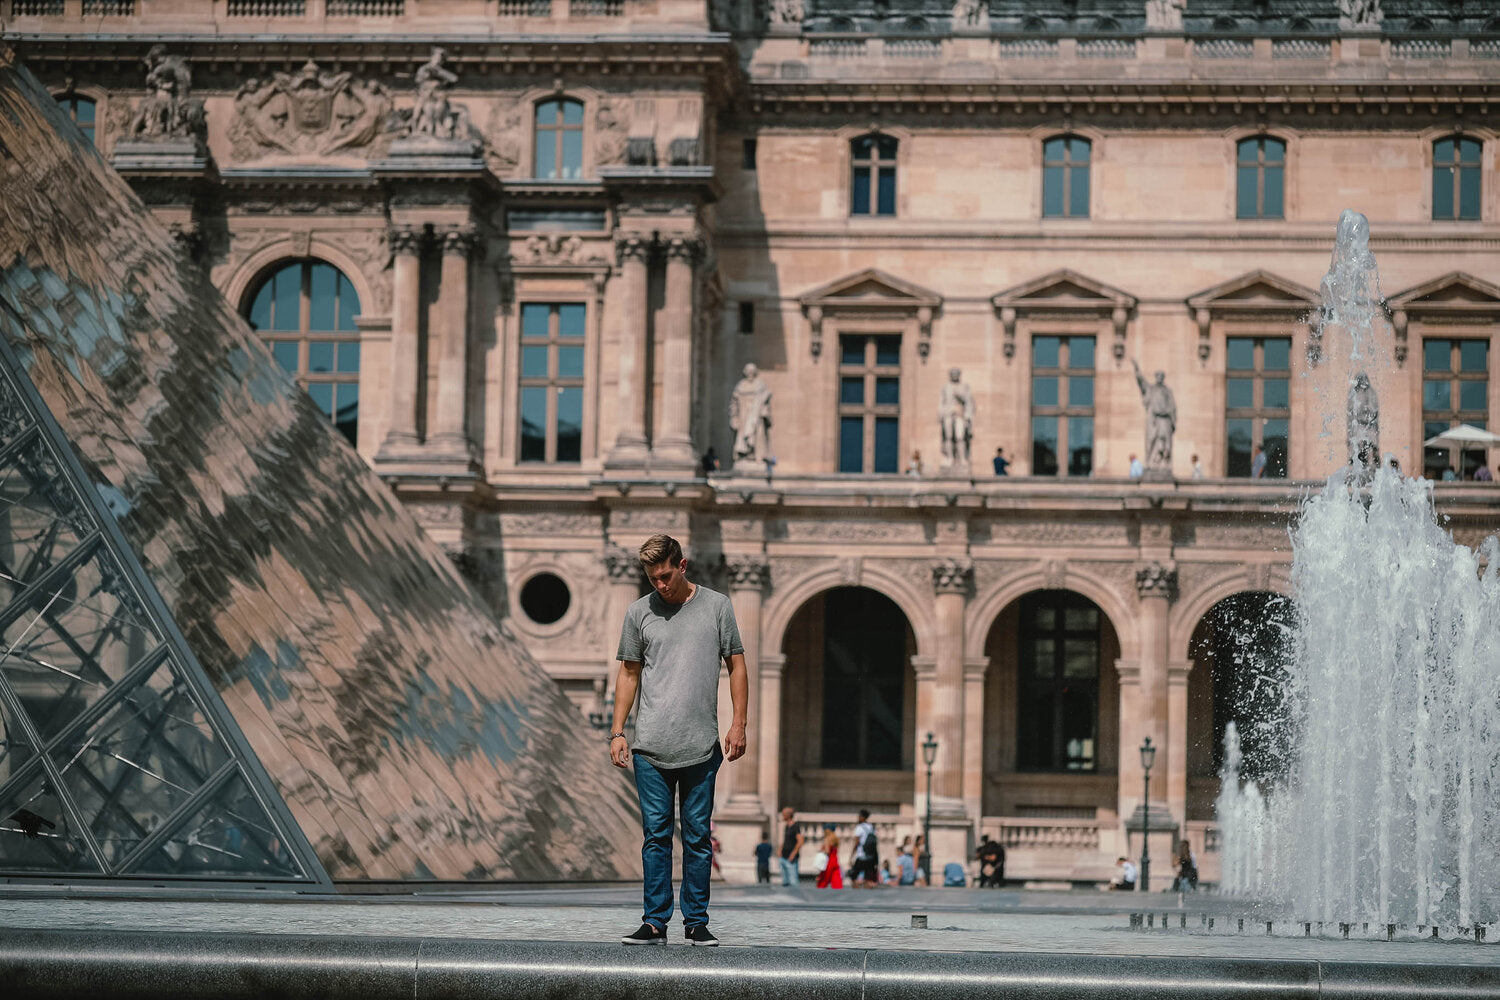 Lost LeBlanc outside the Louvre, Paris